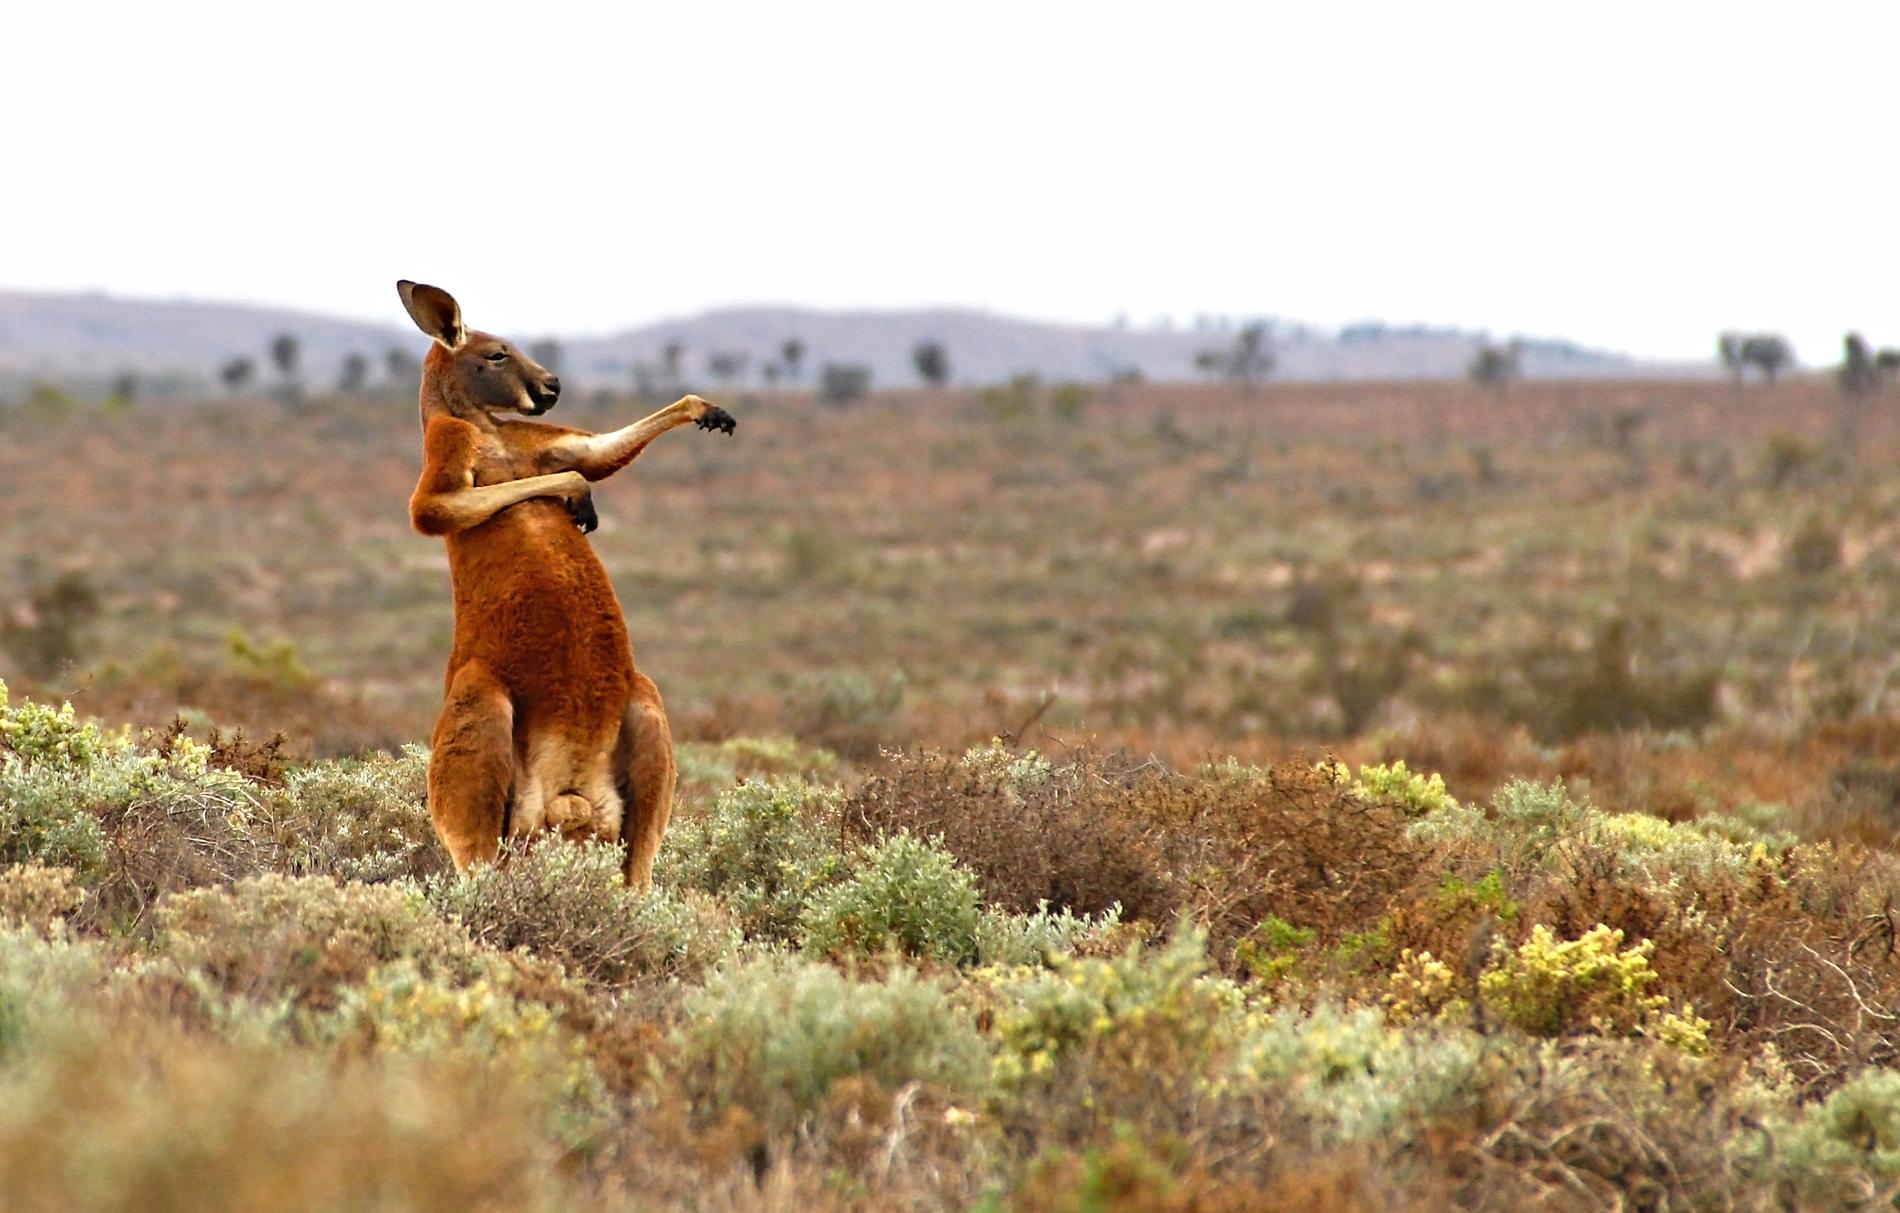 KUNGGURU FU Fotografen Andrej Giljov fångade den här kängurun under morgongymnastiken i Fowlers pass, Australien.